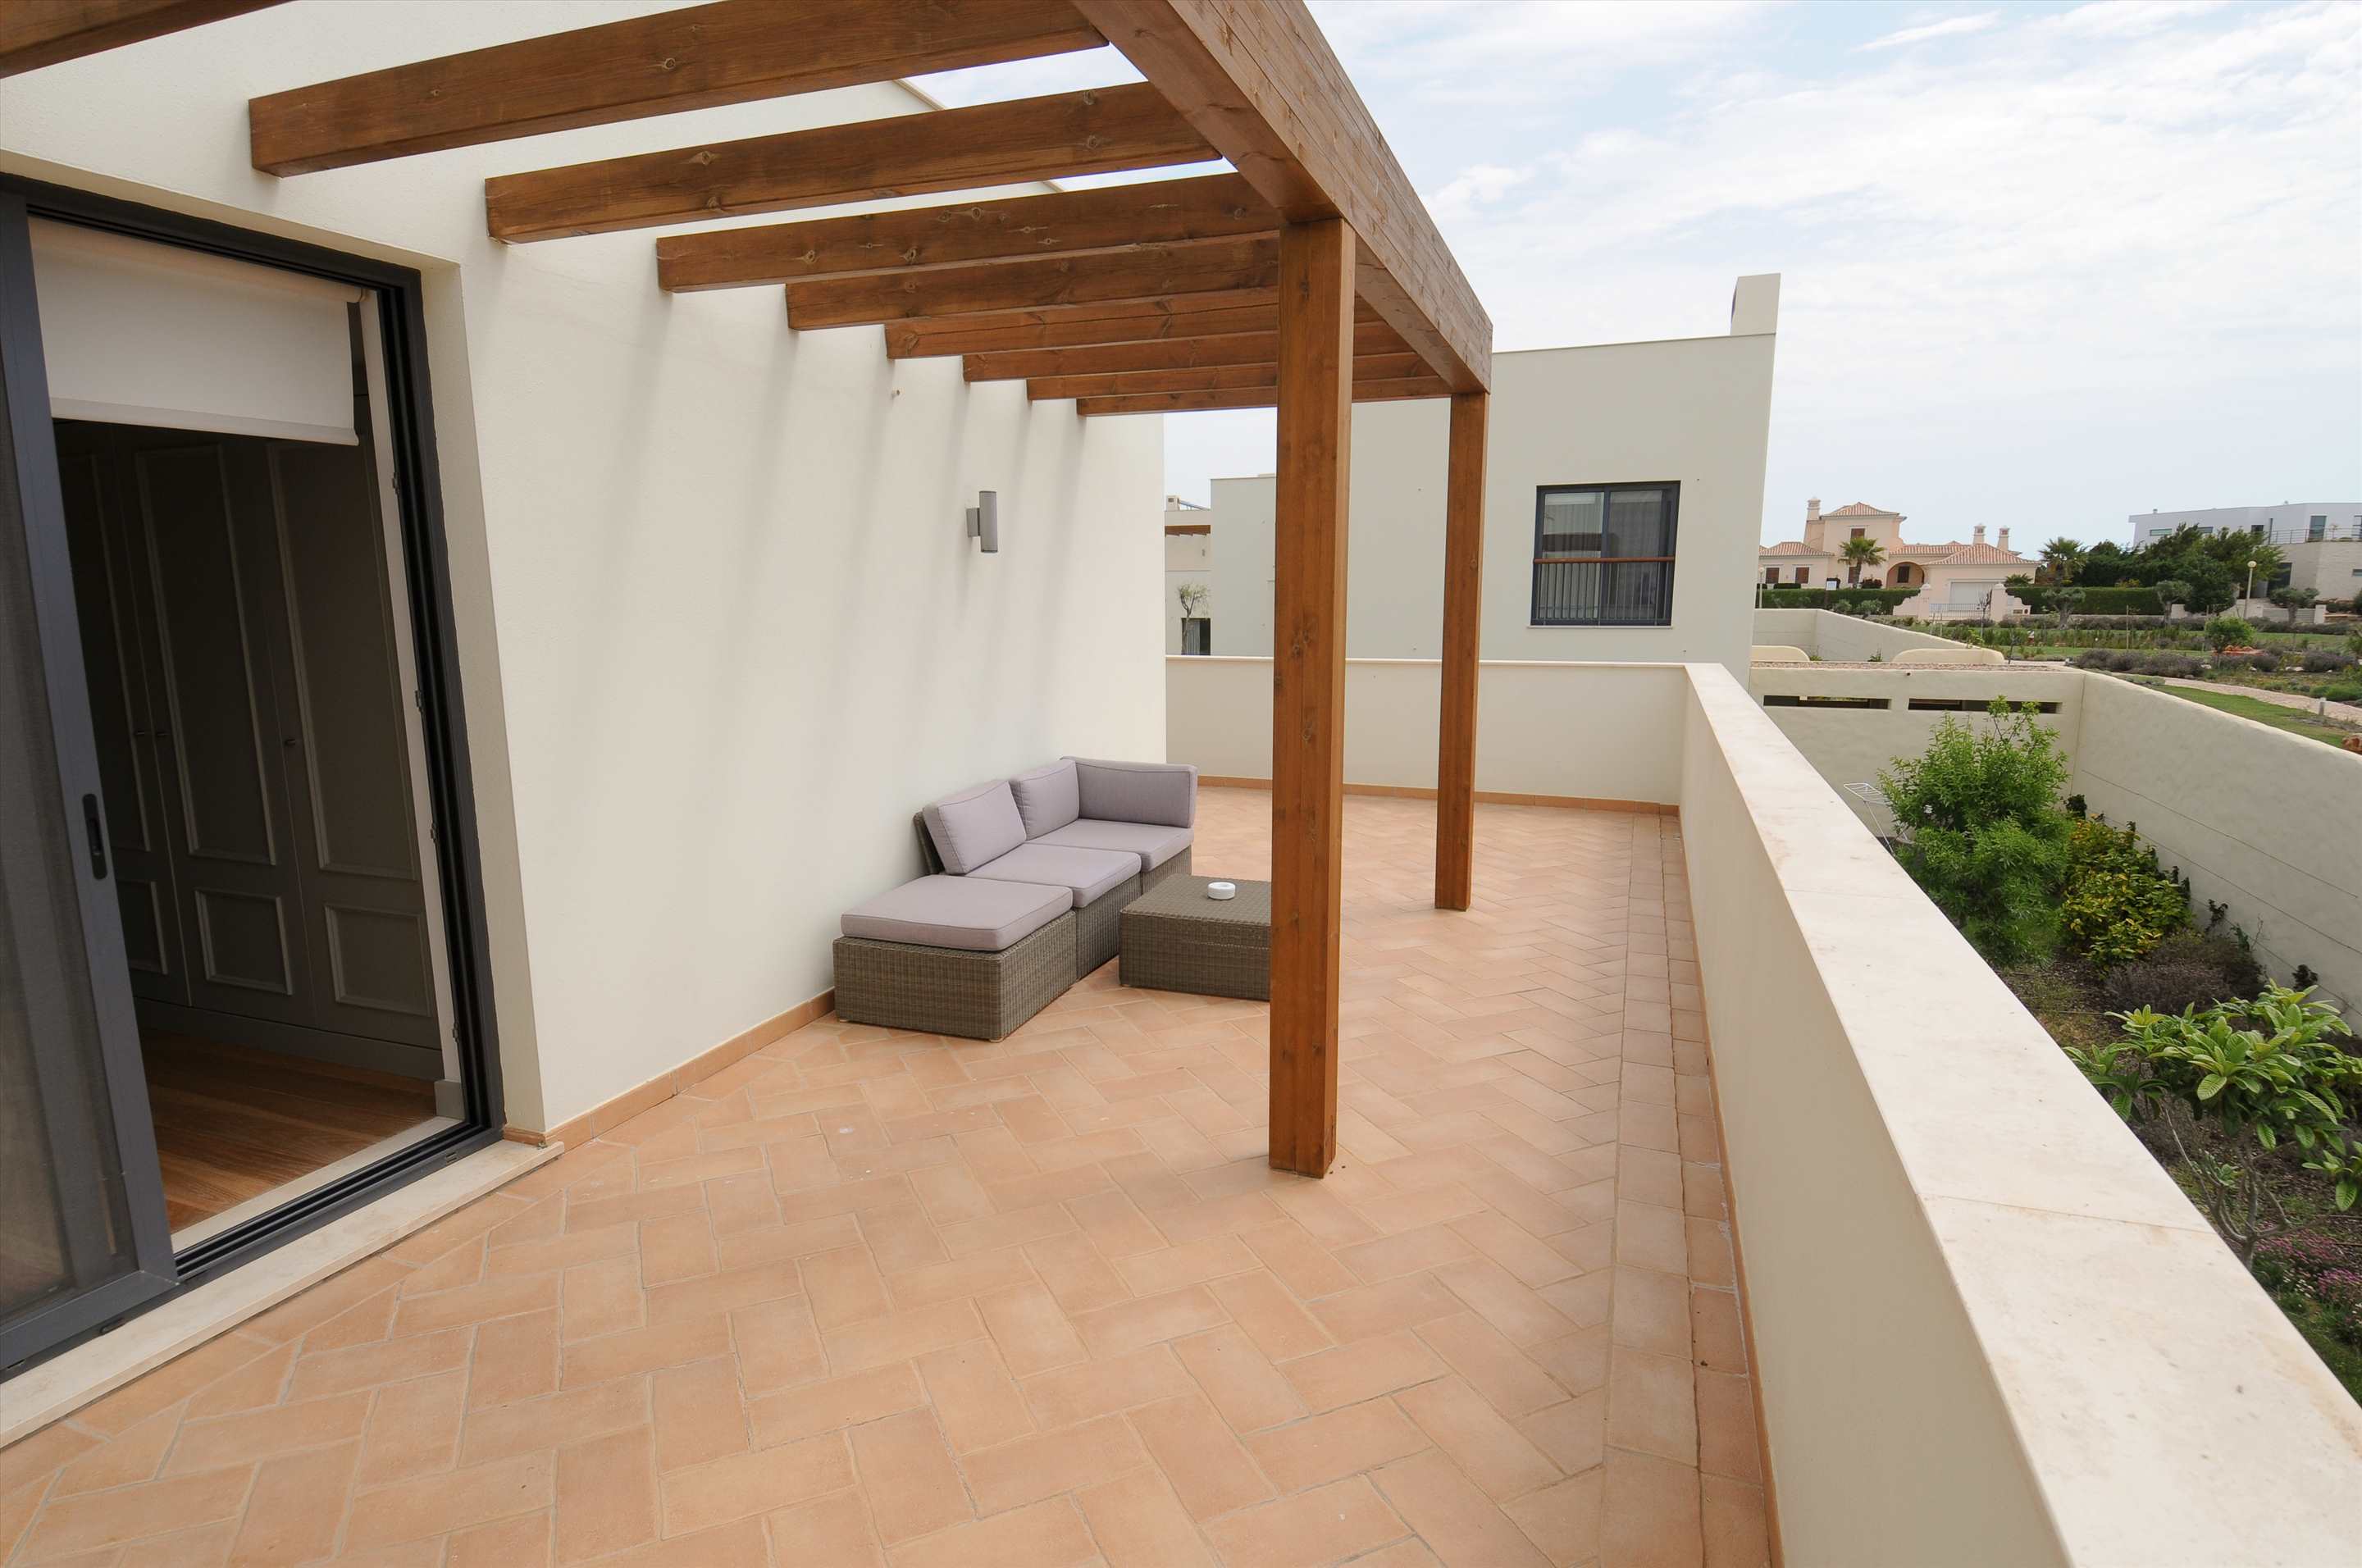 Martinhal Village Garden House, Deluxe One Bedroom Apartment, 1 bedroom villa in Martinhal Sagres, Algarve Photo #19